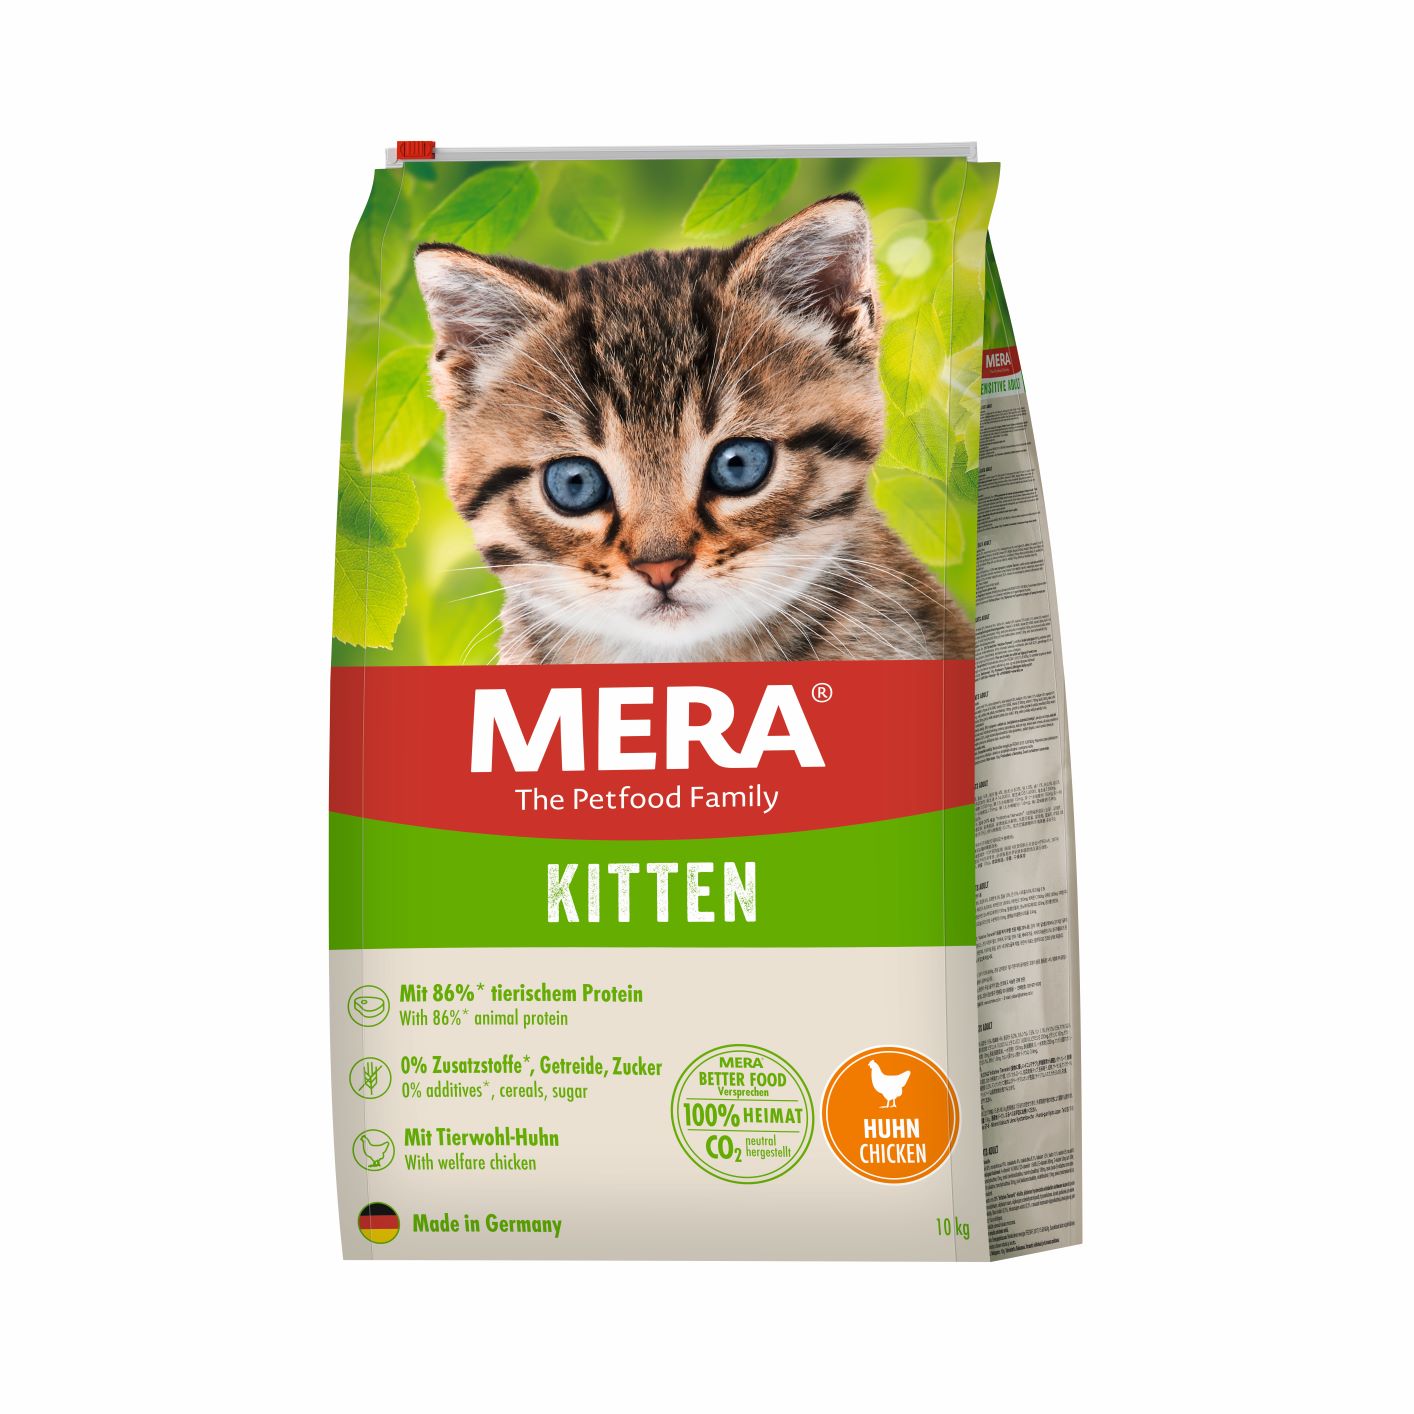 Artikel mit dem Namen Mera Cats Kitten Huhn im Shop von zoo.de , dem Onlineshop für nachhaltiges Hundefutter und Katzenfutter.